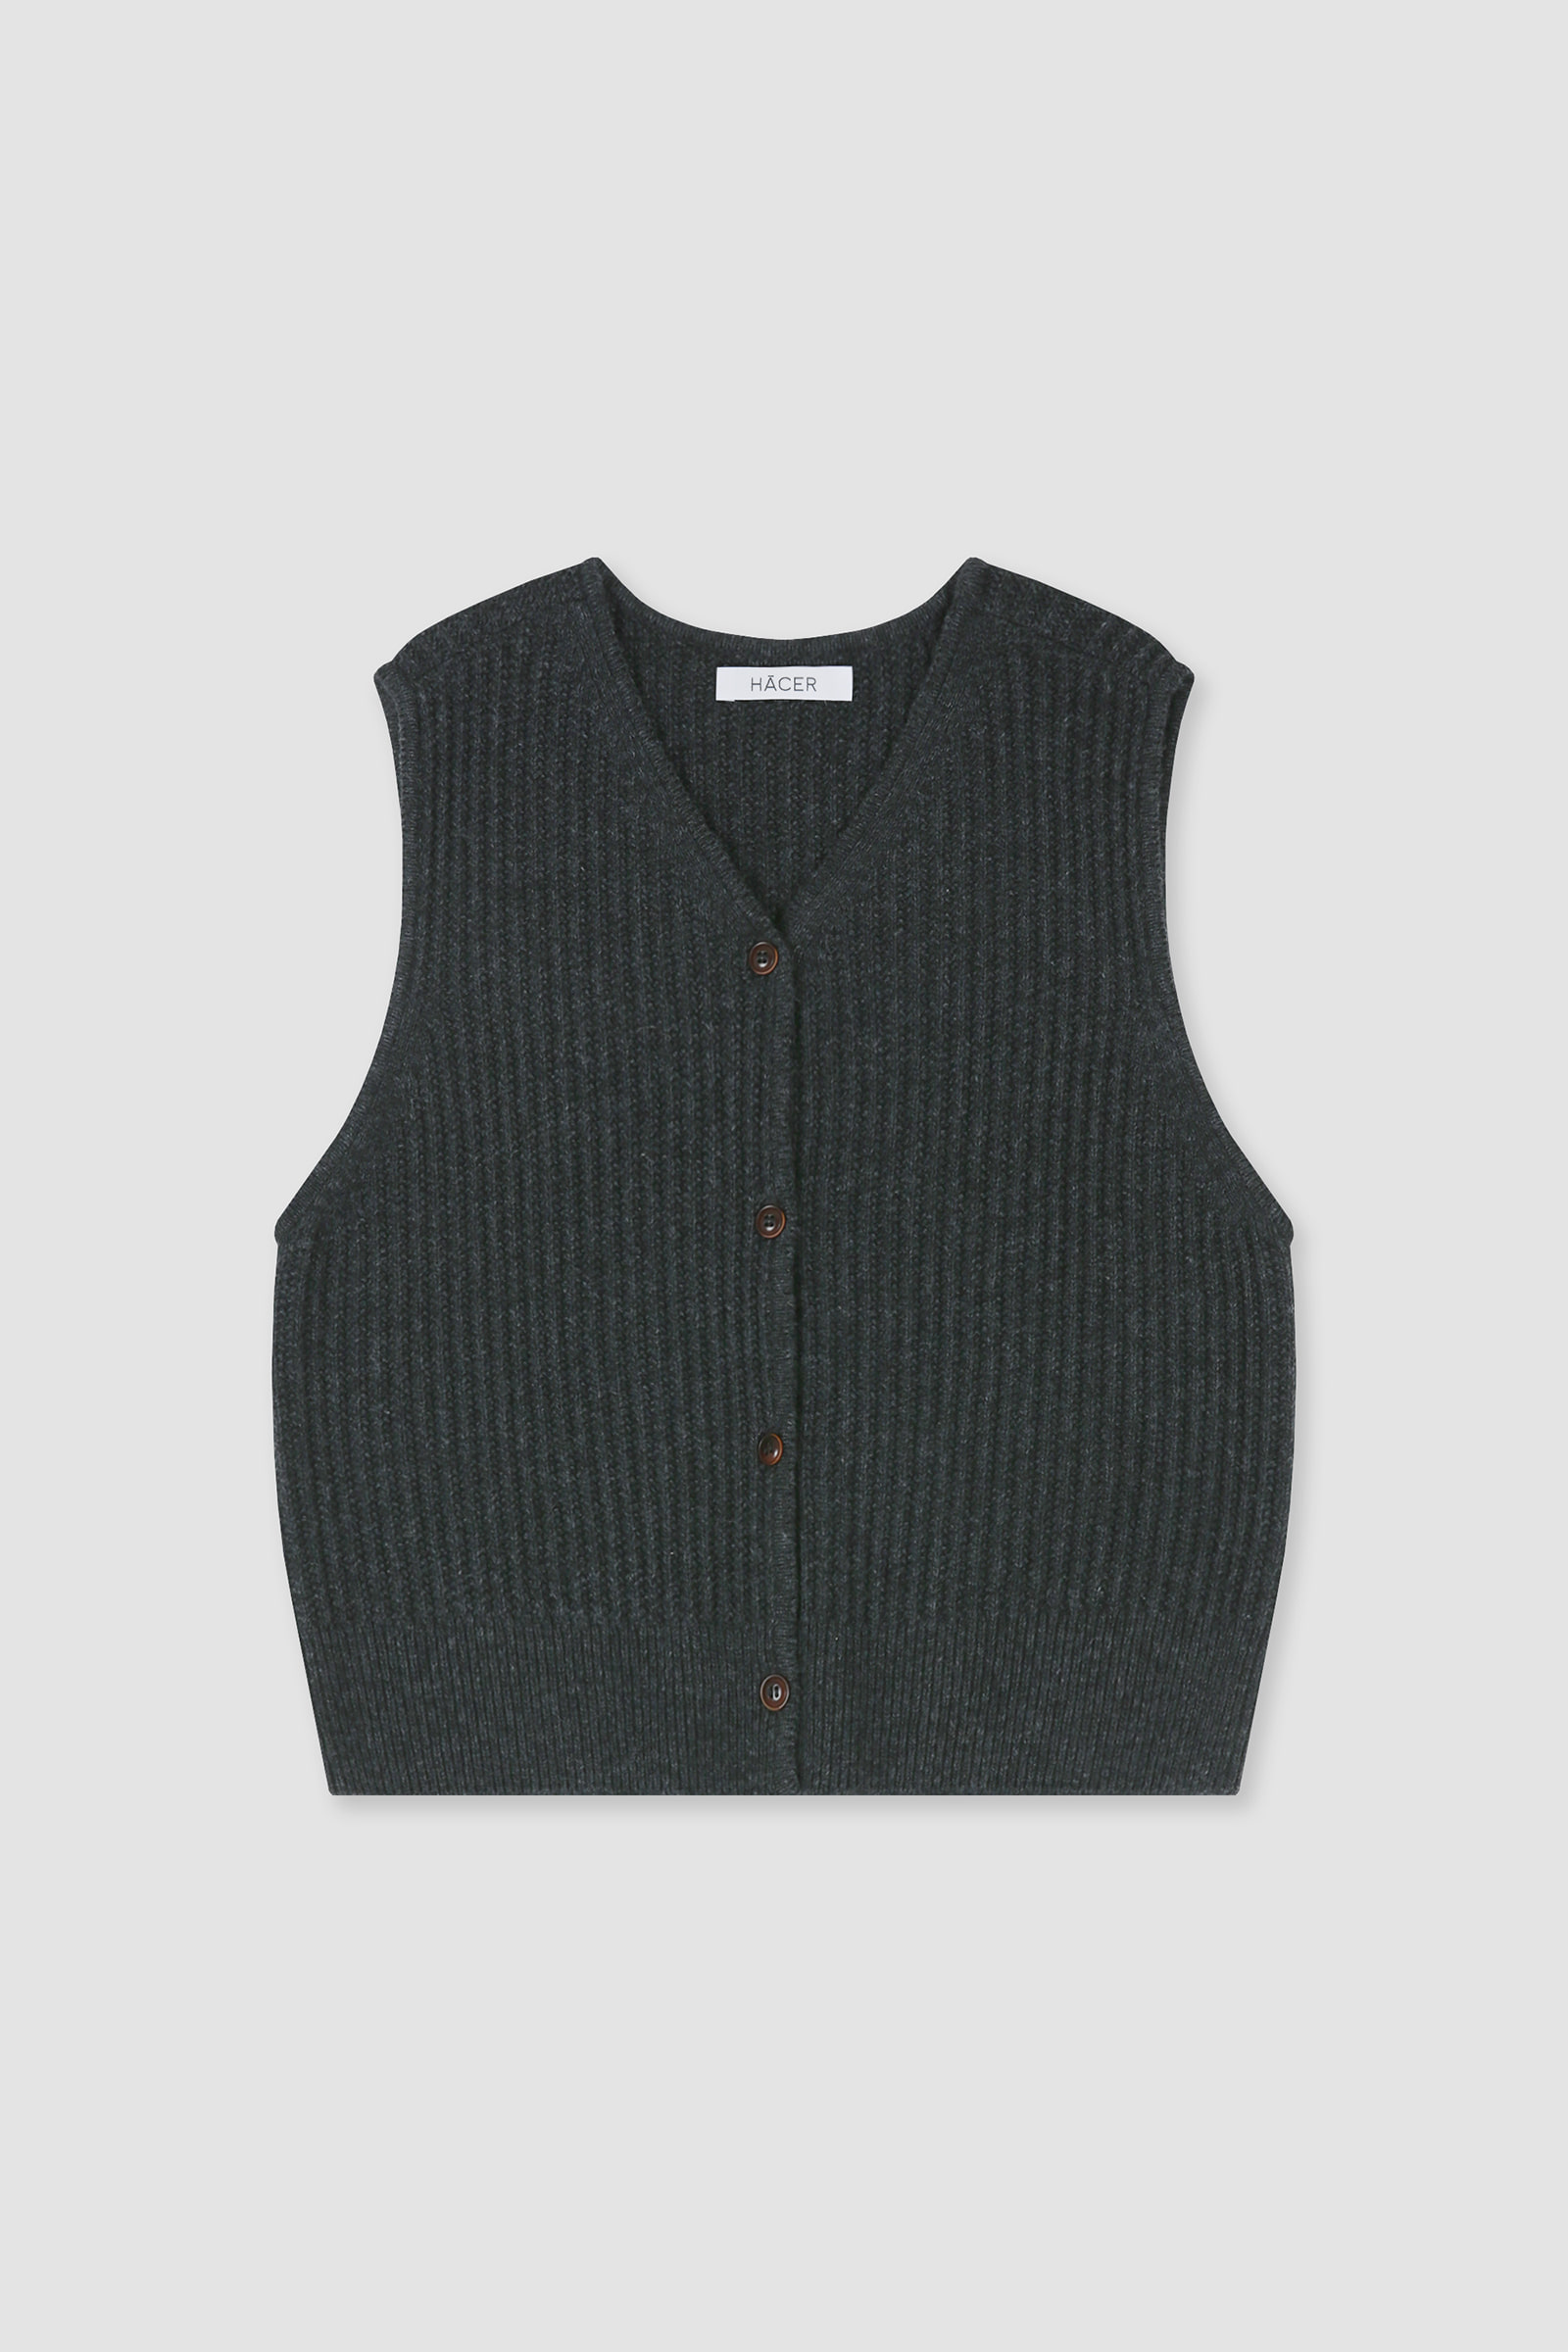 [2nd] Bay Knit Vest